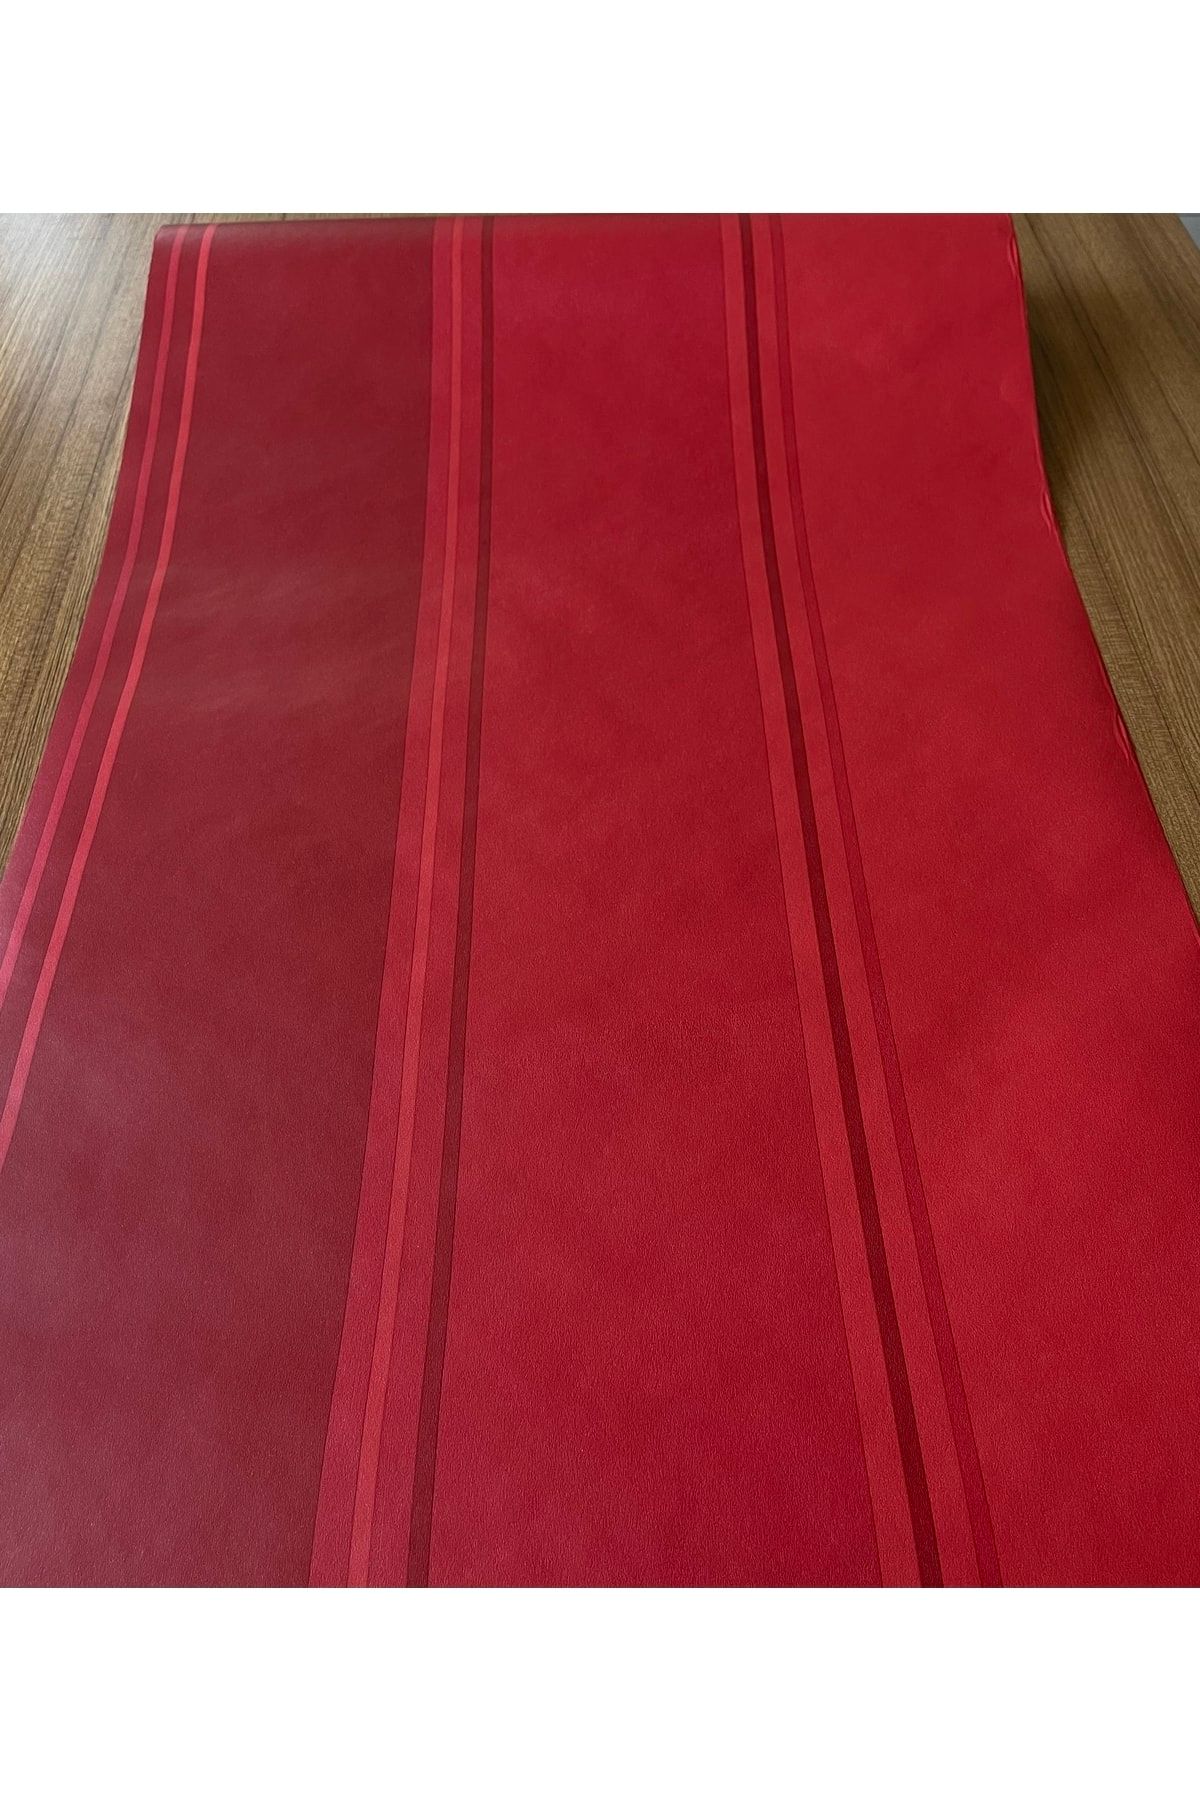 BAŞYAPI DİZAYN Kırmızı Çizgili Ithal Duvar Kağıdı (5m²)